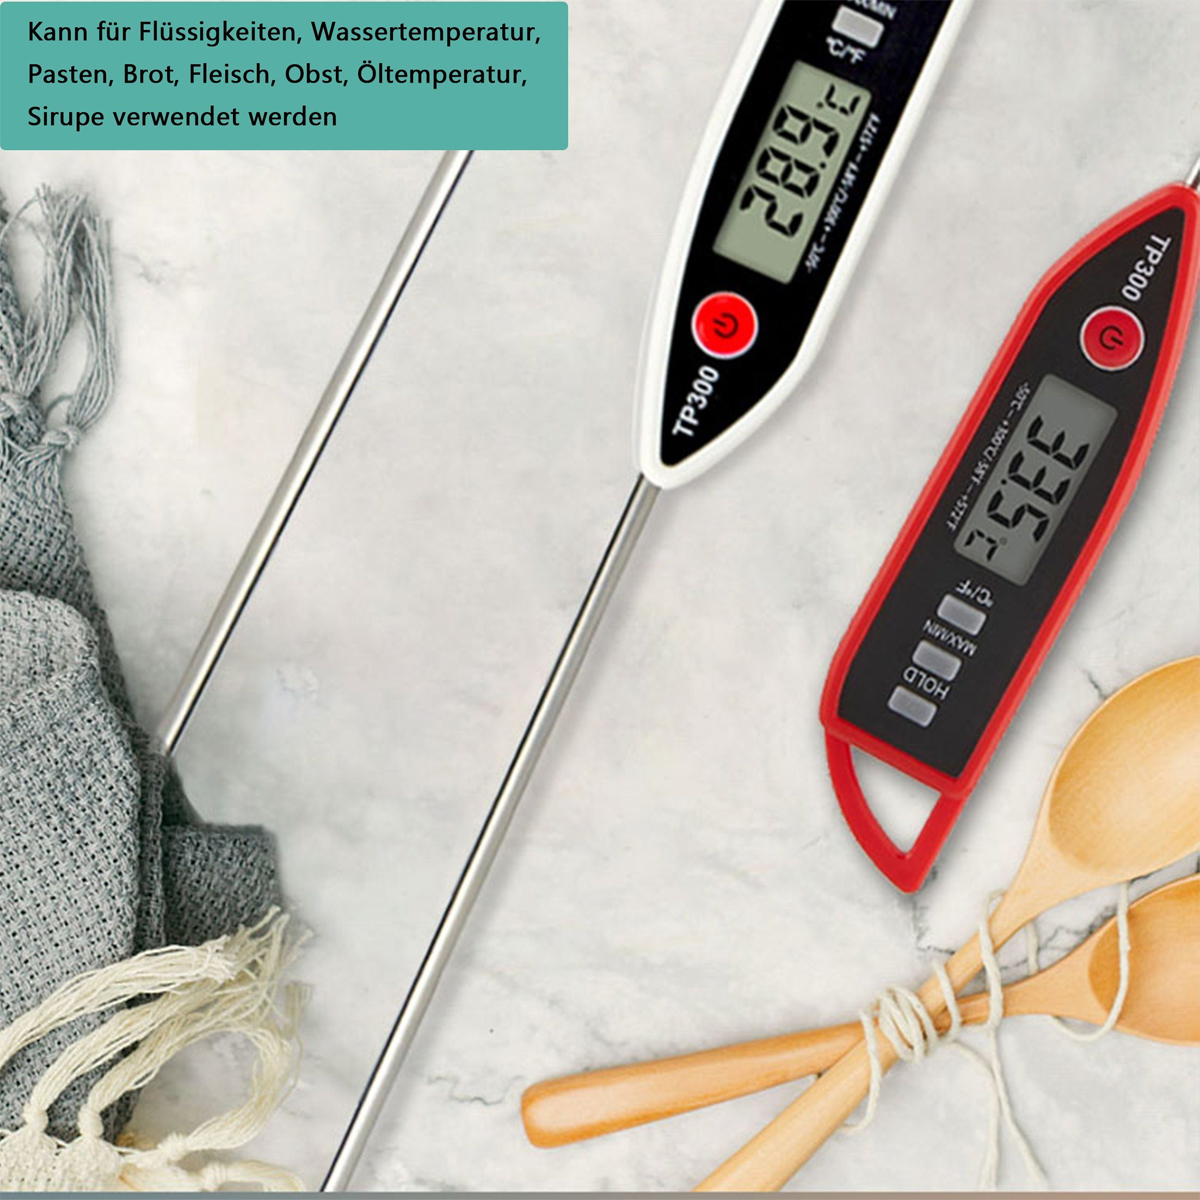 Paste für Flüssigkeit, KÜLER Sondenthermometer, BBQ-Thermometer, Wassertemperatur, Fleischthermometer